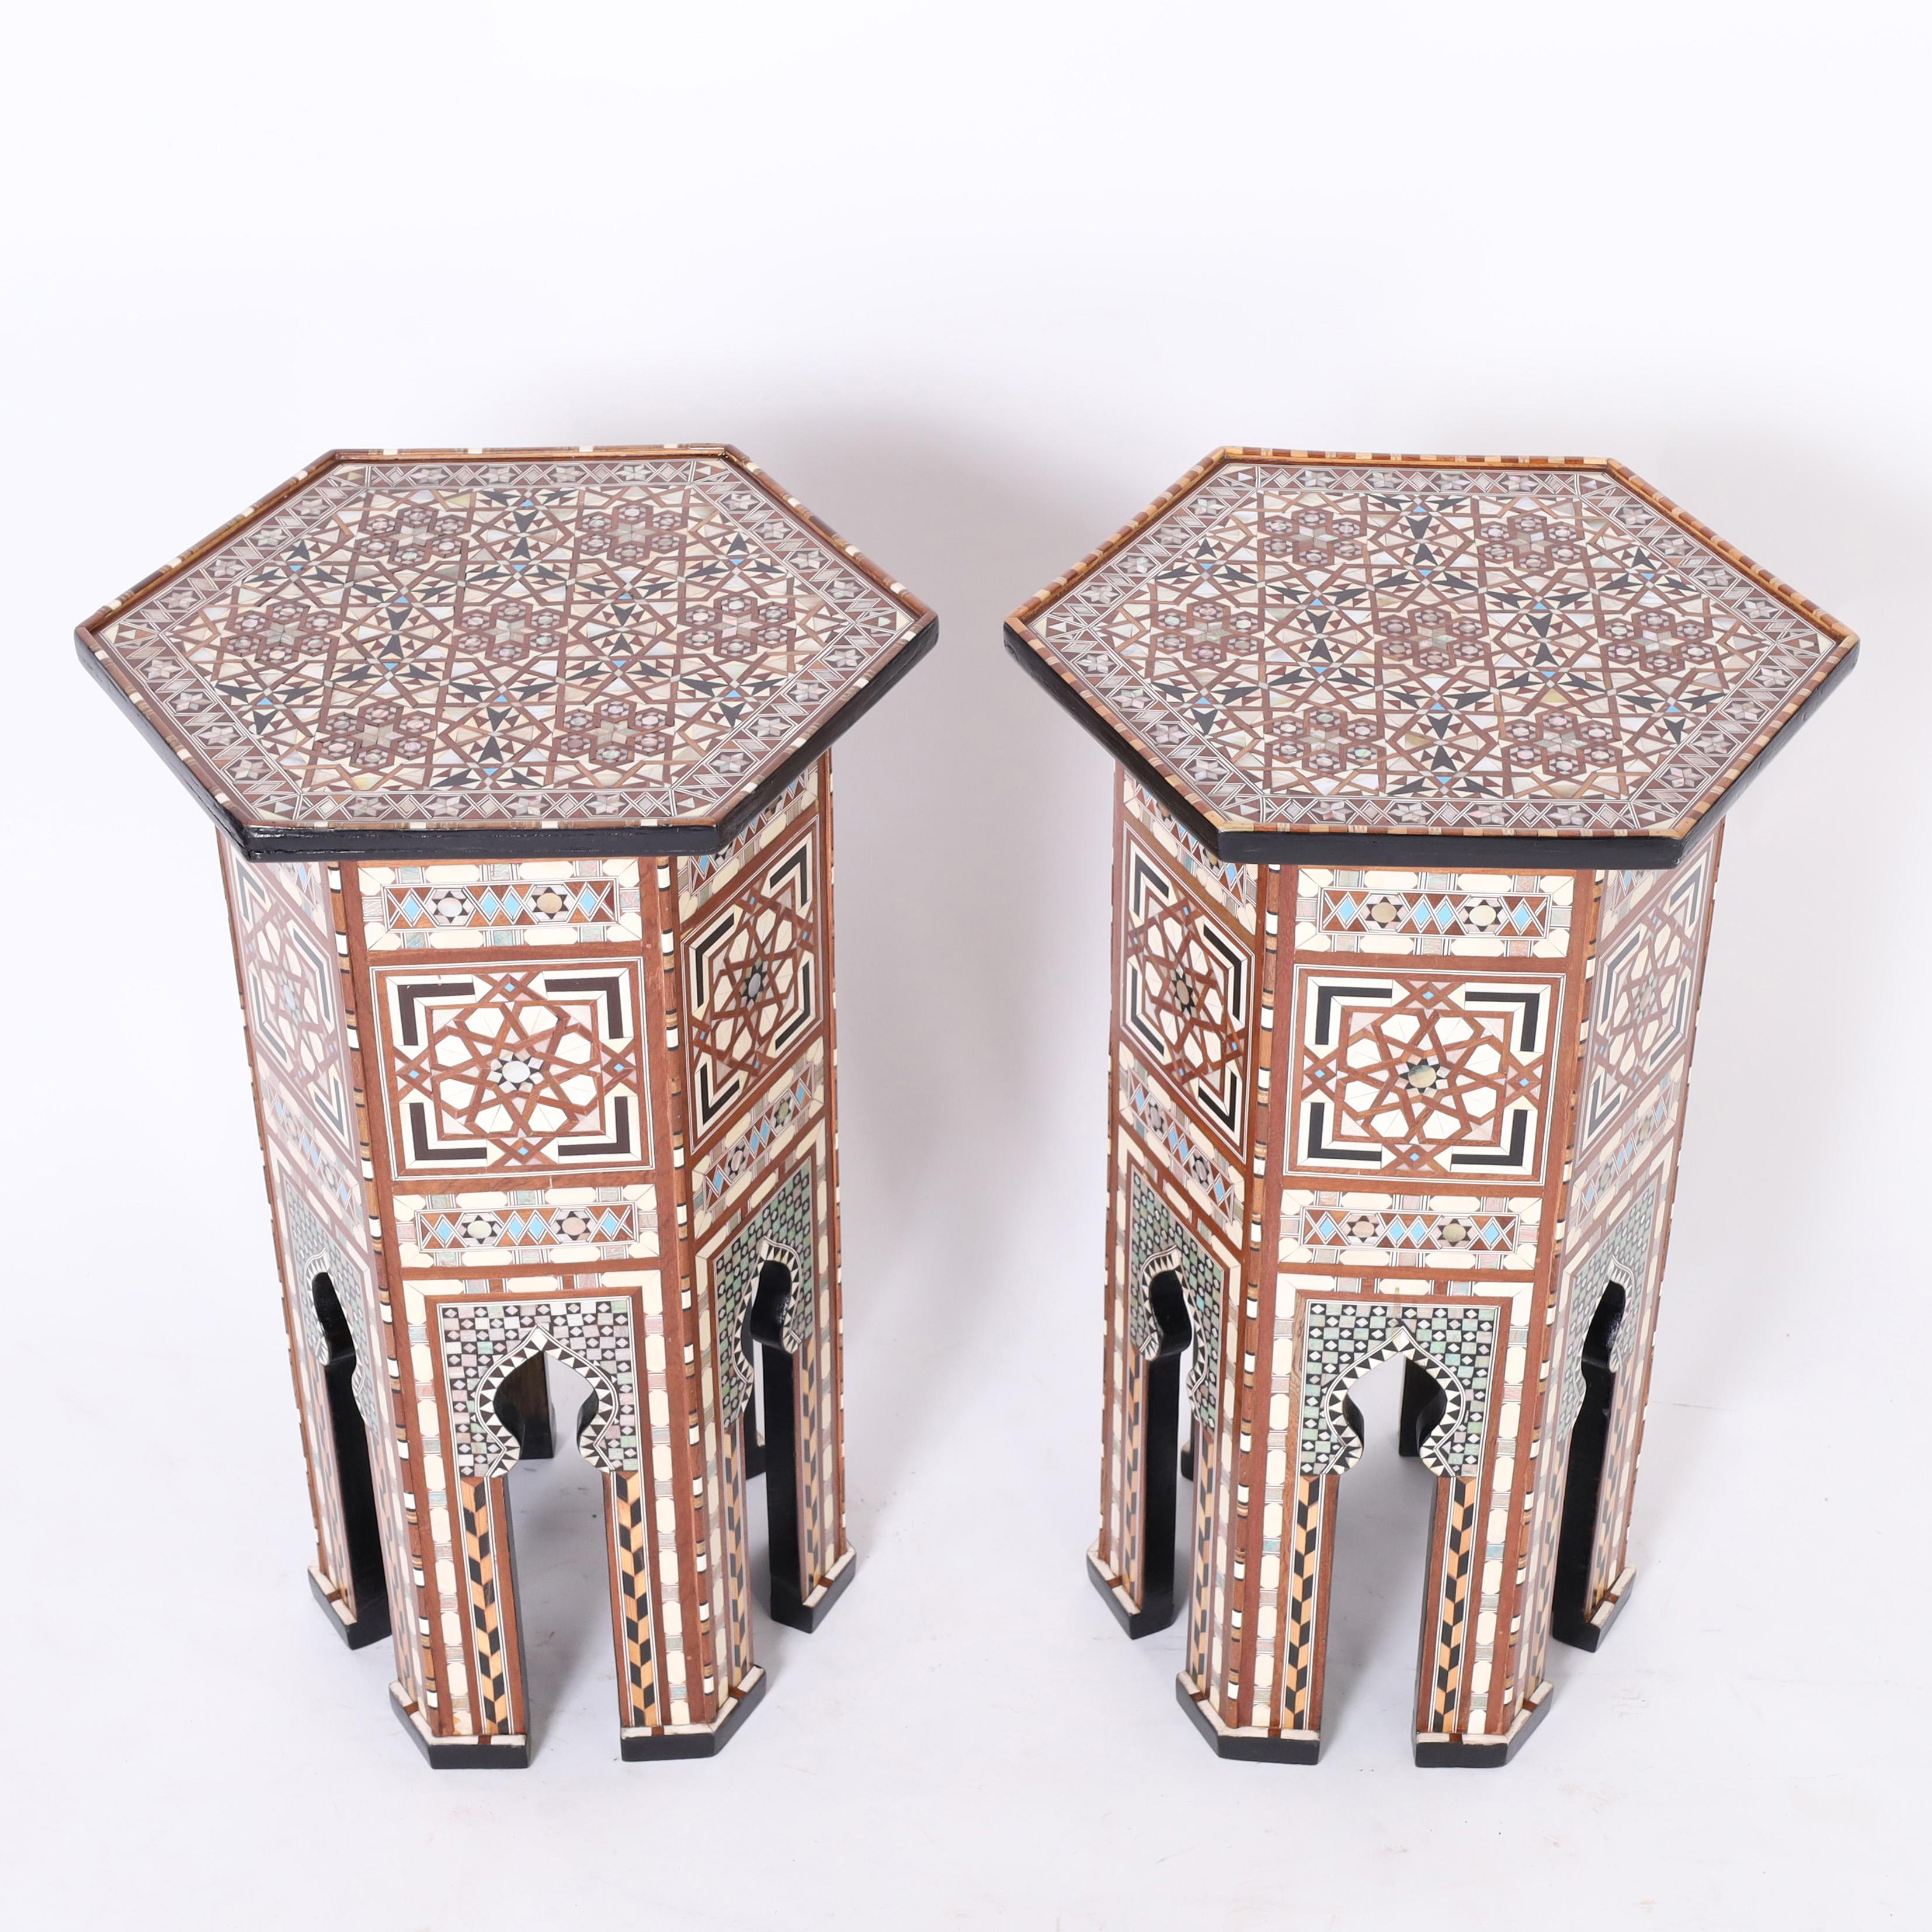 Remarquable paire de supports ou piédestaux marocains en acajou de forme hexagonale avec des arcs mauresques classiques et recouverts d'une marqueterie élaborée de nacre, d'ébène, d'os et d'os peint en bleu dans des motifs géométriques. 